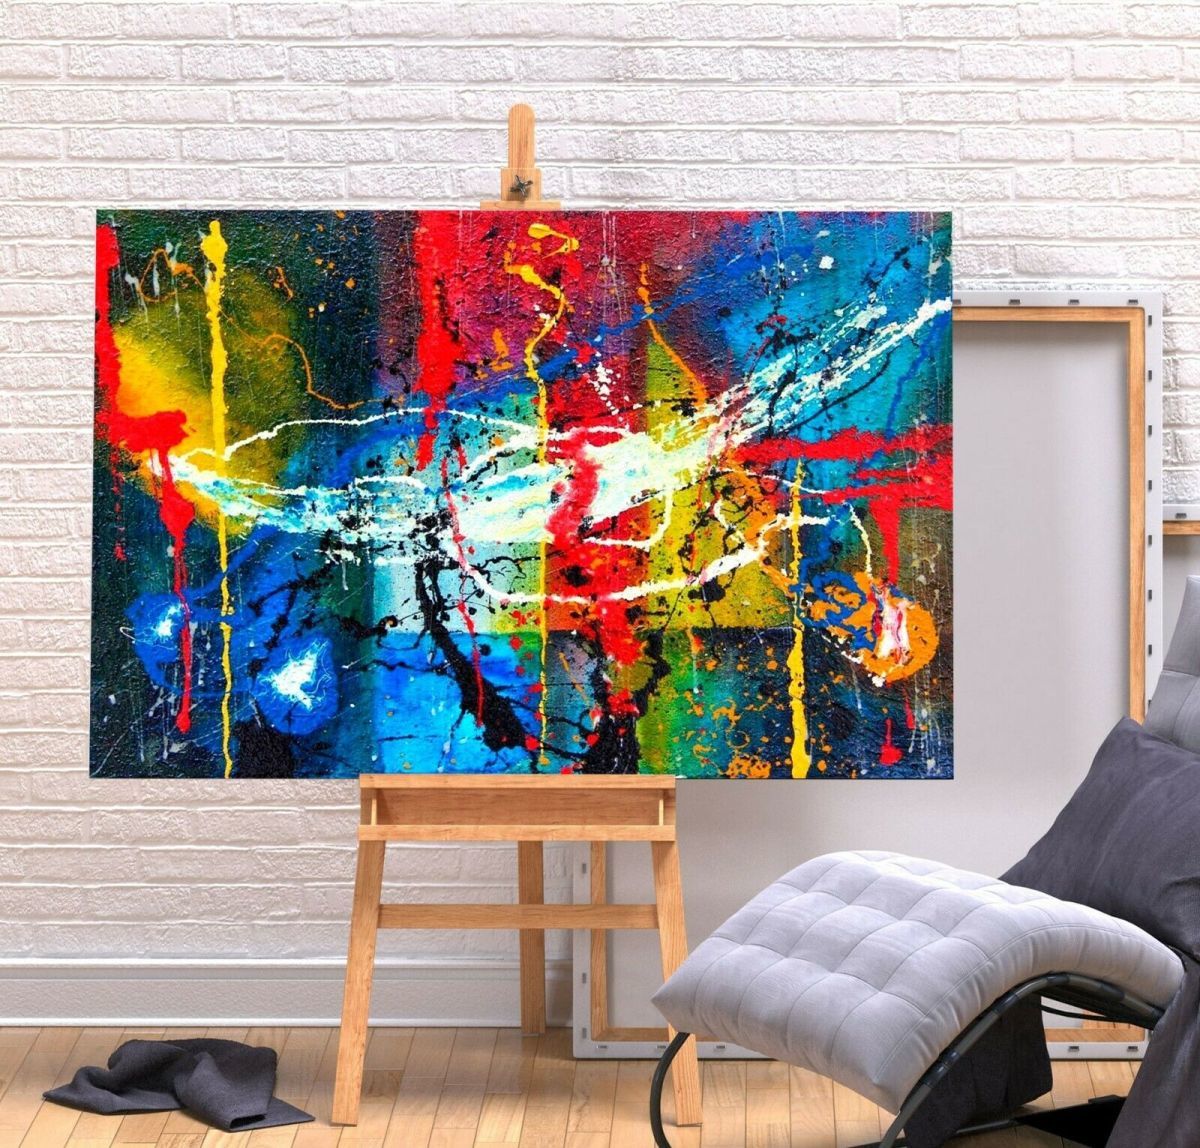 Jackson Pollock-Plakat, hochwertige Leinwand, gerahmtes Bild, A1 Kunsttafel, nordisch, Übersee-, Malerei, Abstraktes Gemälde, Waren, Inneneinrichtung 2, Gedruckte Materialien, Poster, Andere